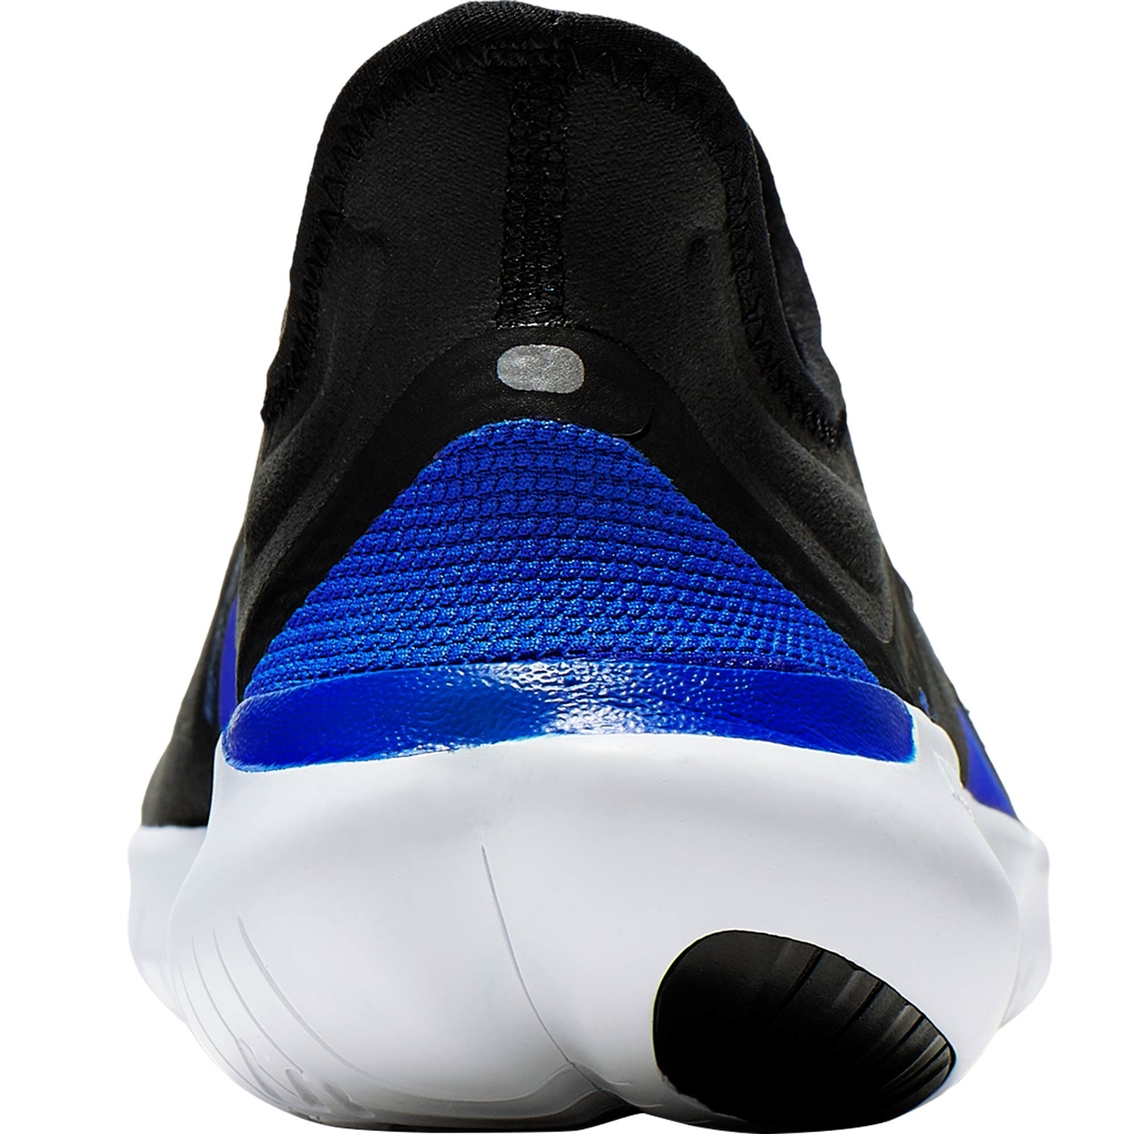 Nike Men's Free RN 5.0 Running Shoes - Image 6 of 6